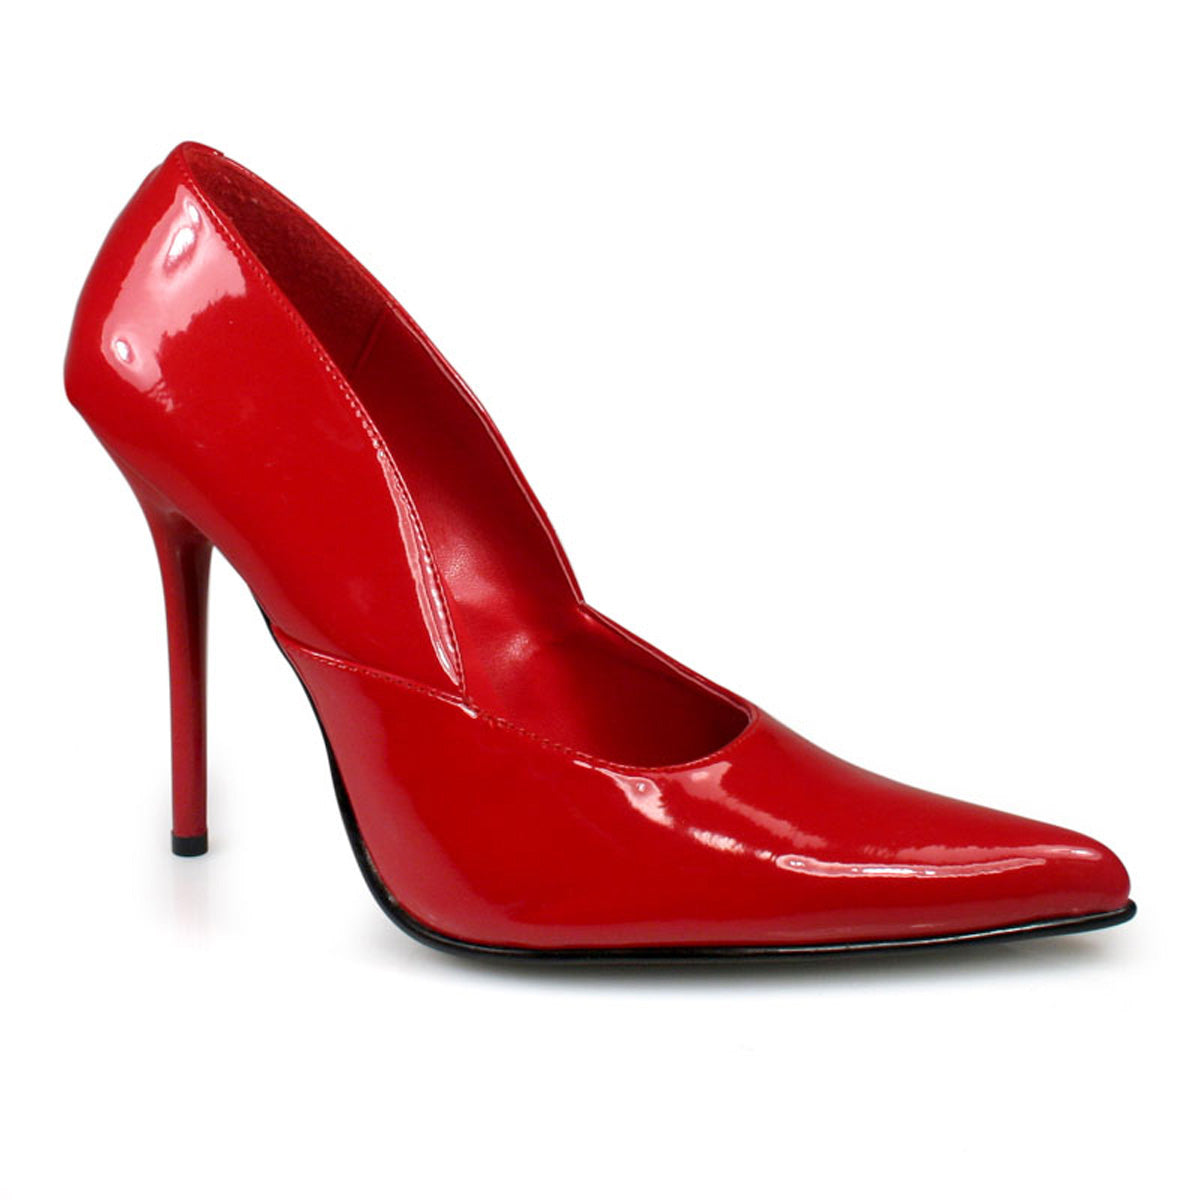 Milaan-01 pleacker 4,5 inch hak rood fetish schoeisel